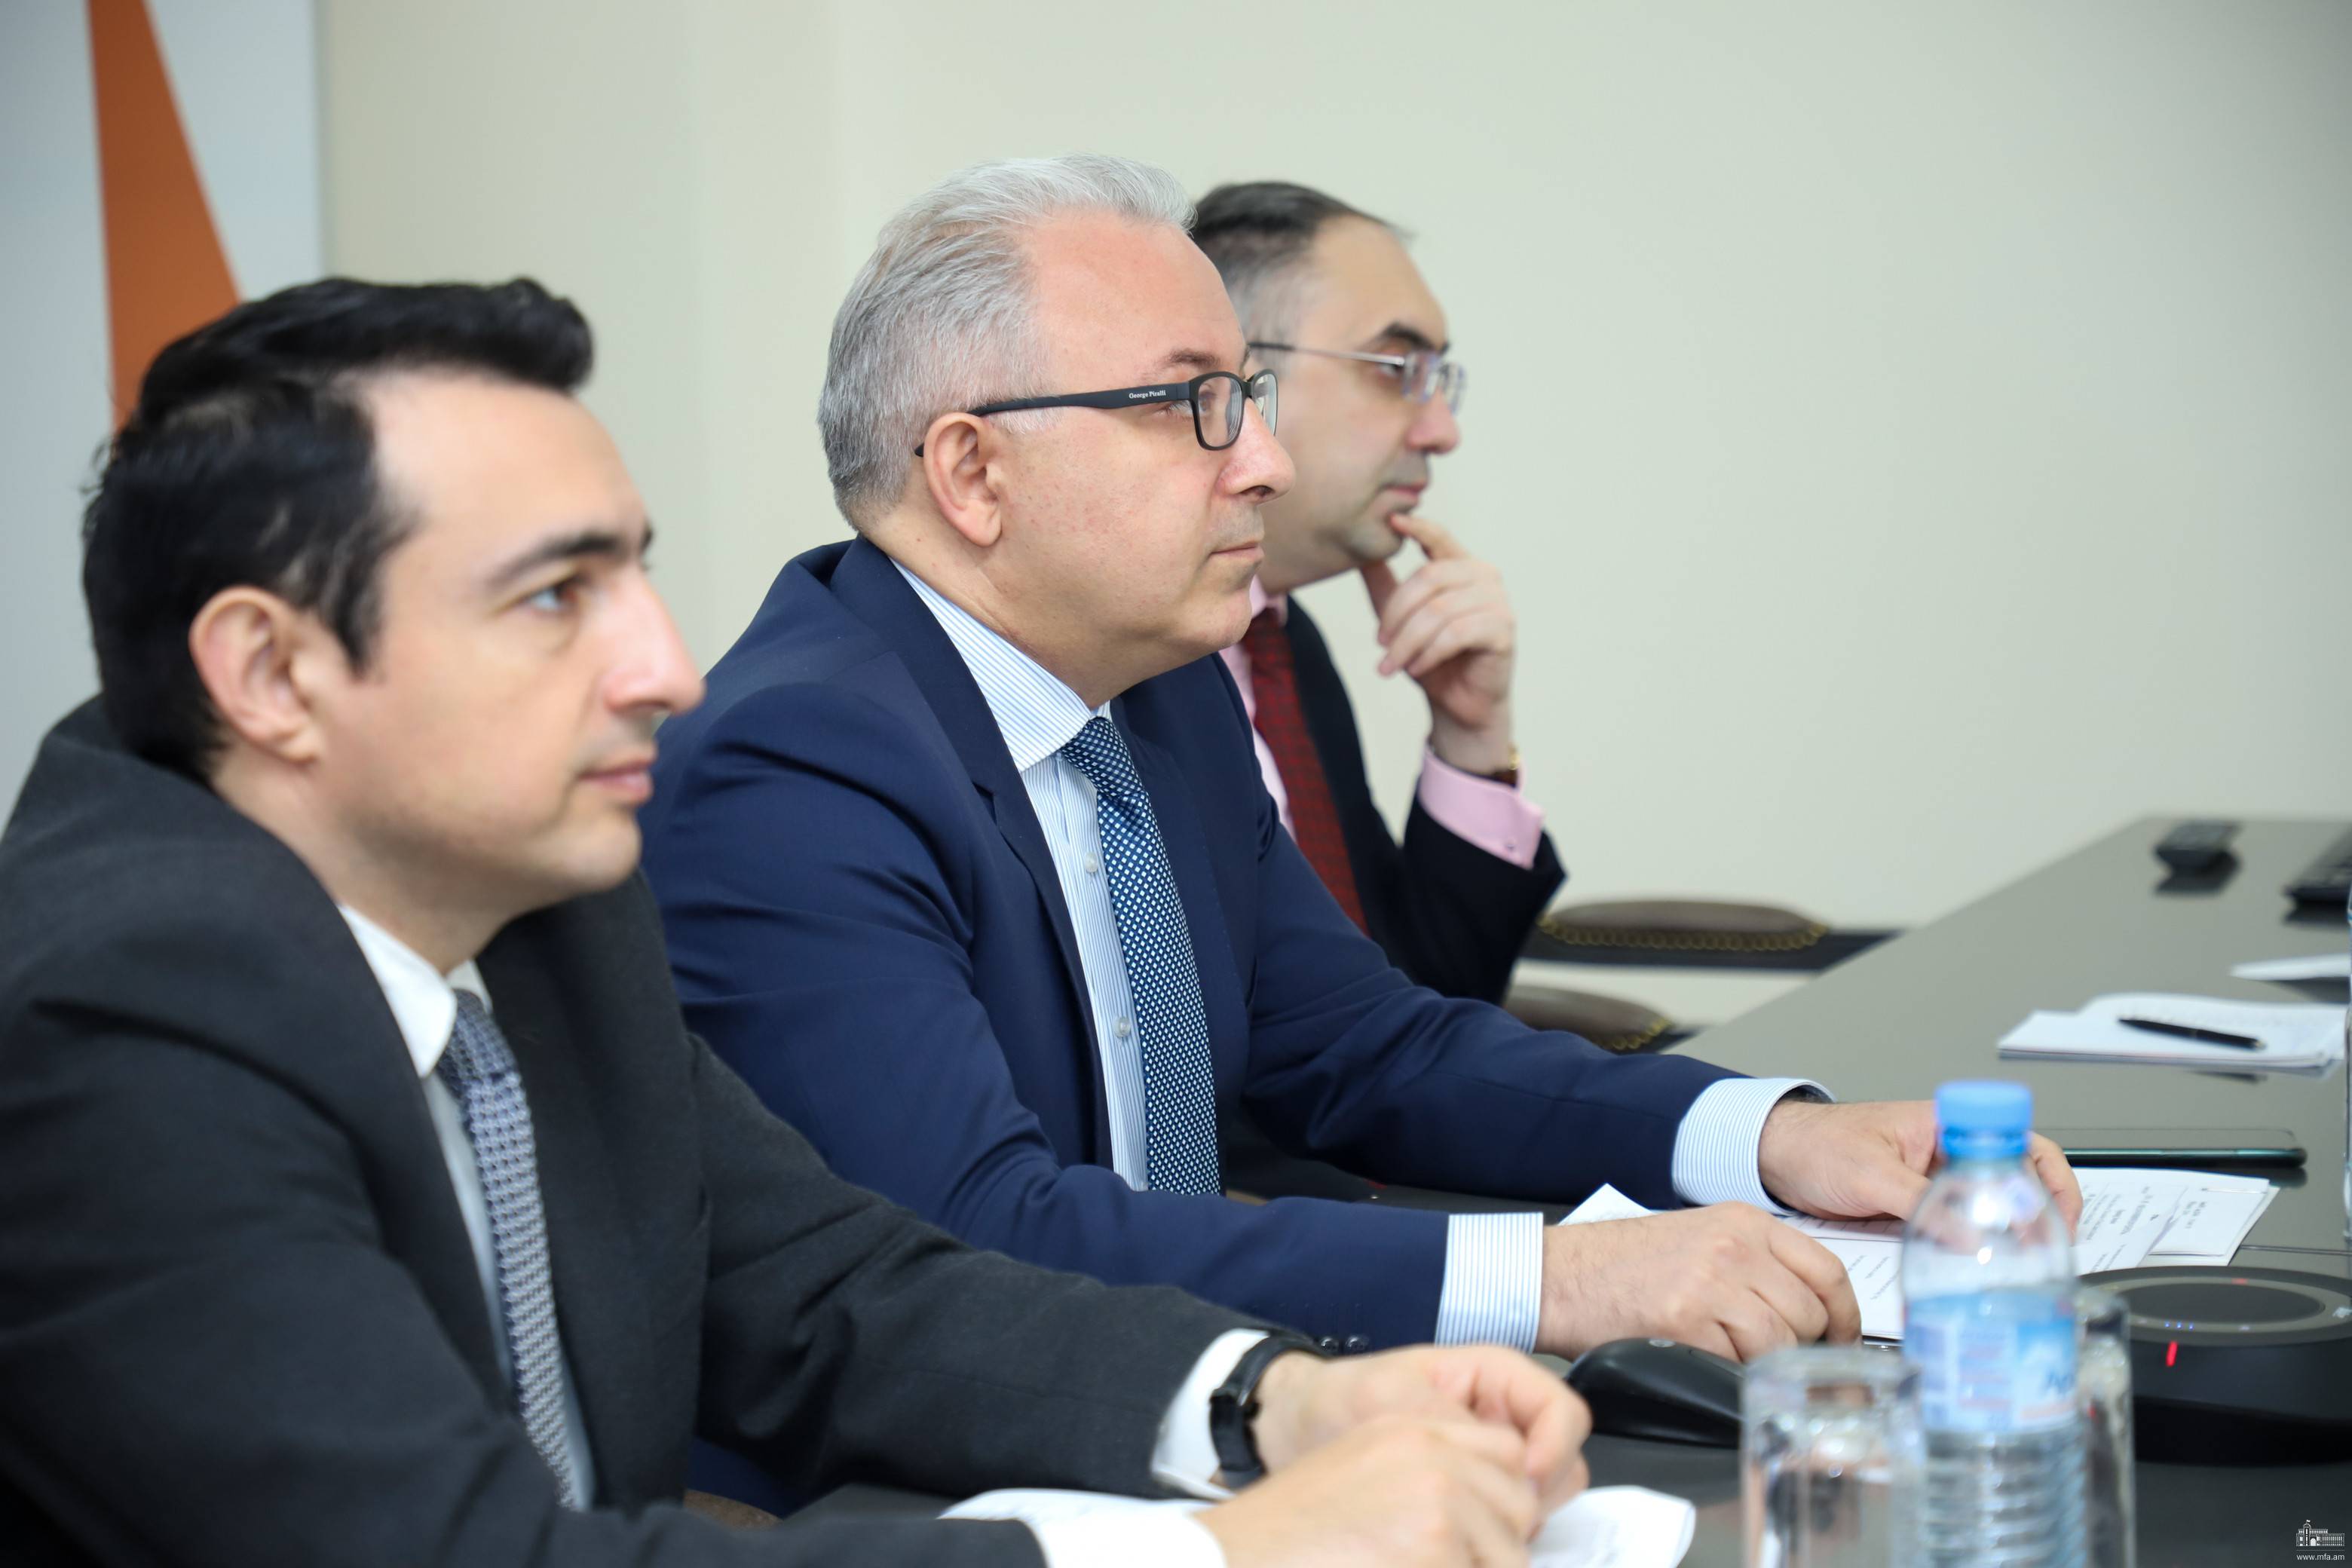 Армения остается верной обязательствам, направленным на установление мира  в регионе - МИД